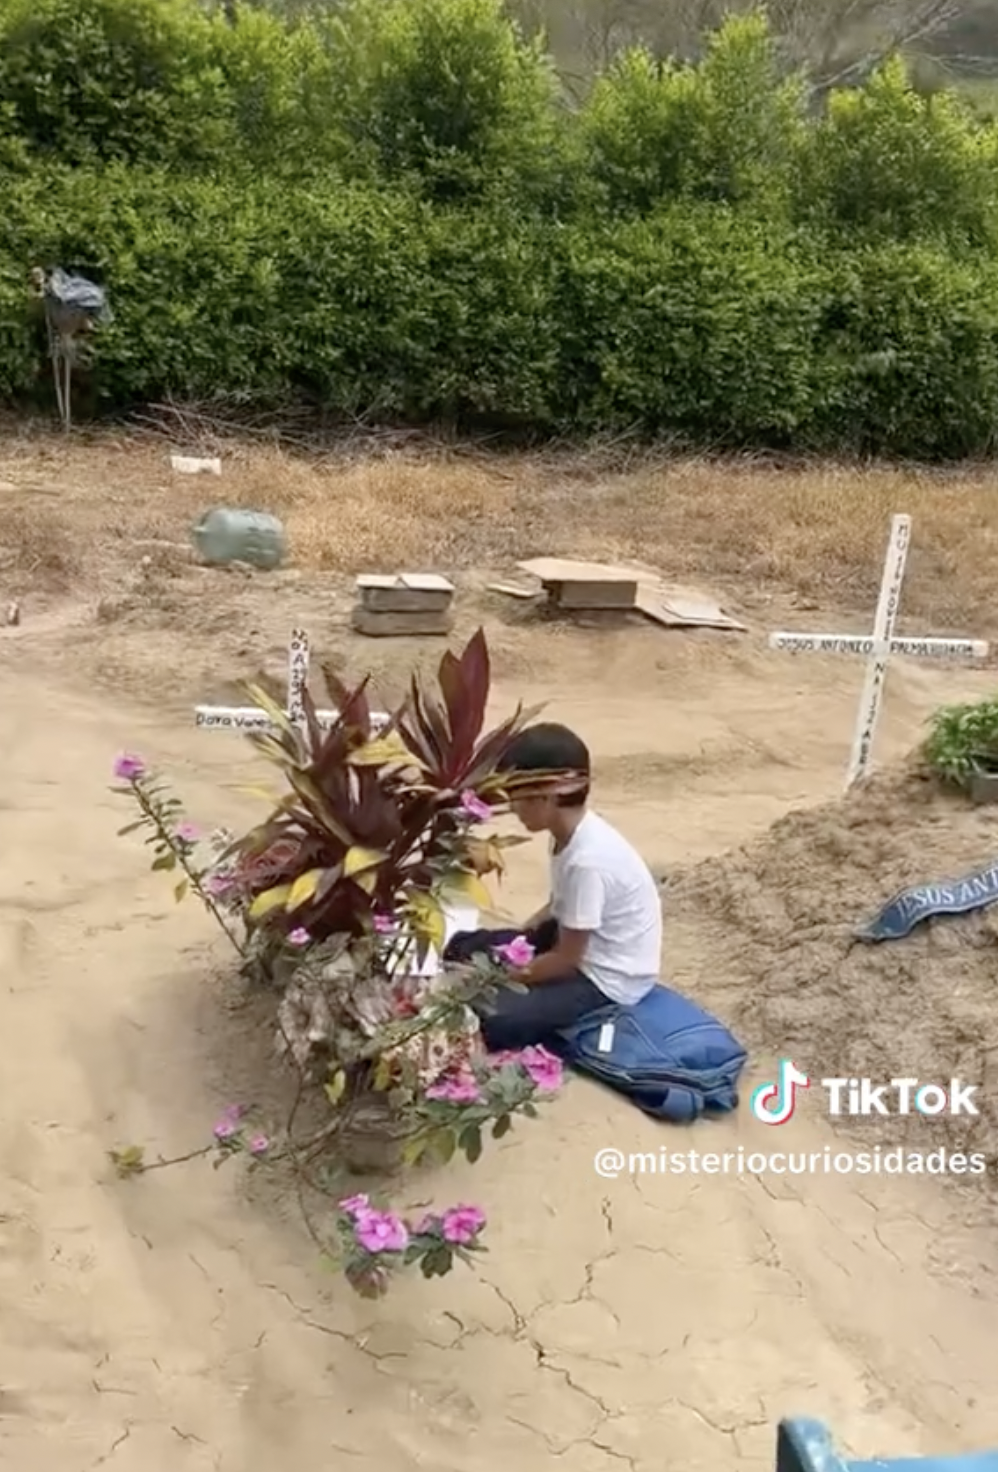 Kike en la tumba de su madre | Foto: tiktok.com/@misteriocuriosidades